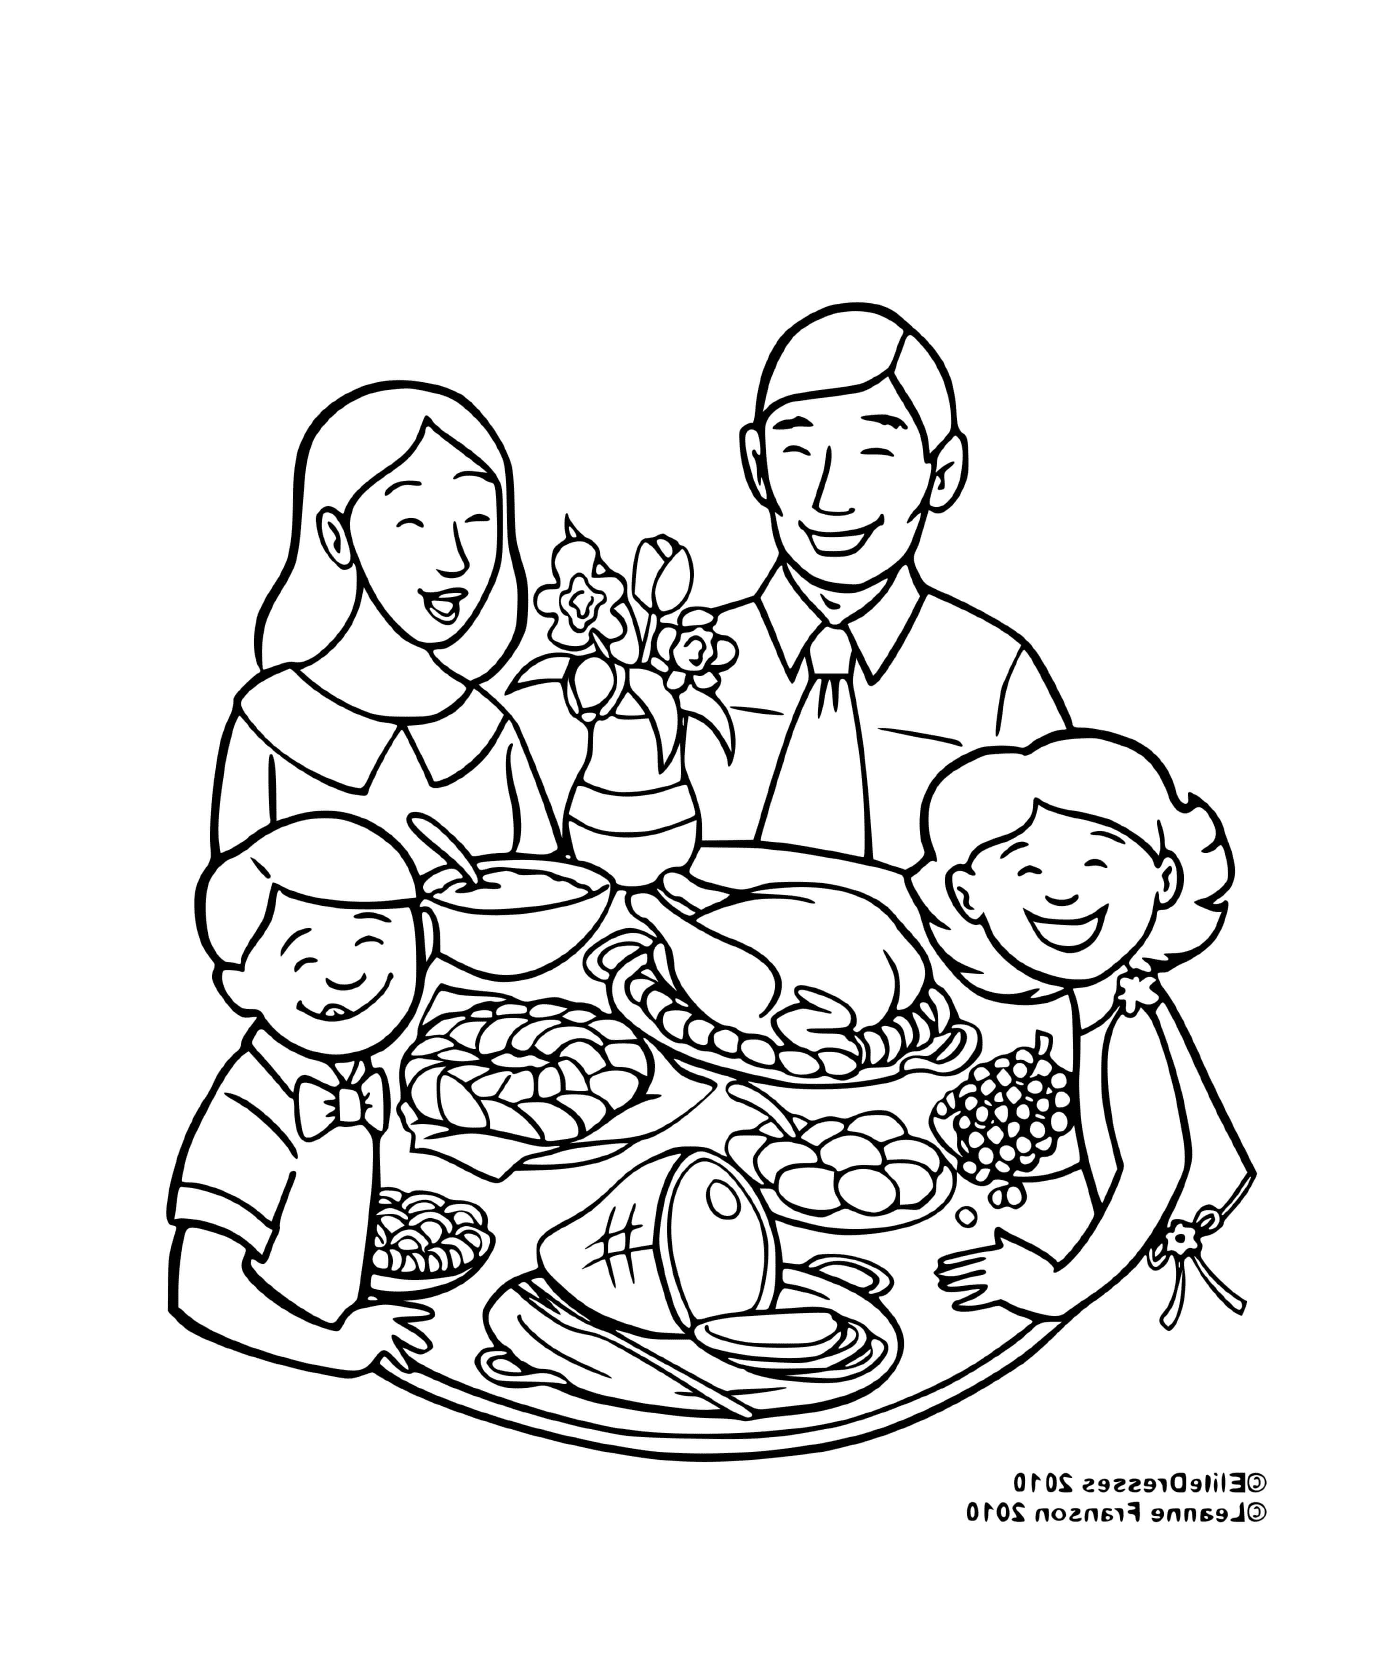  一家人吃饭时很方便 